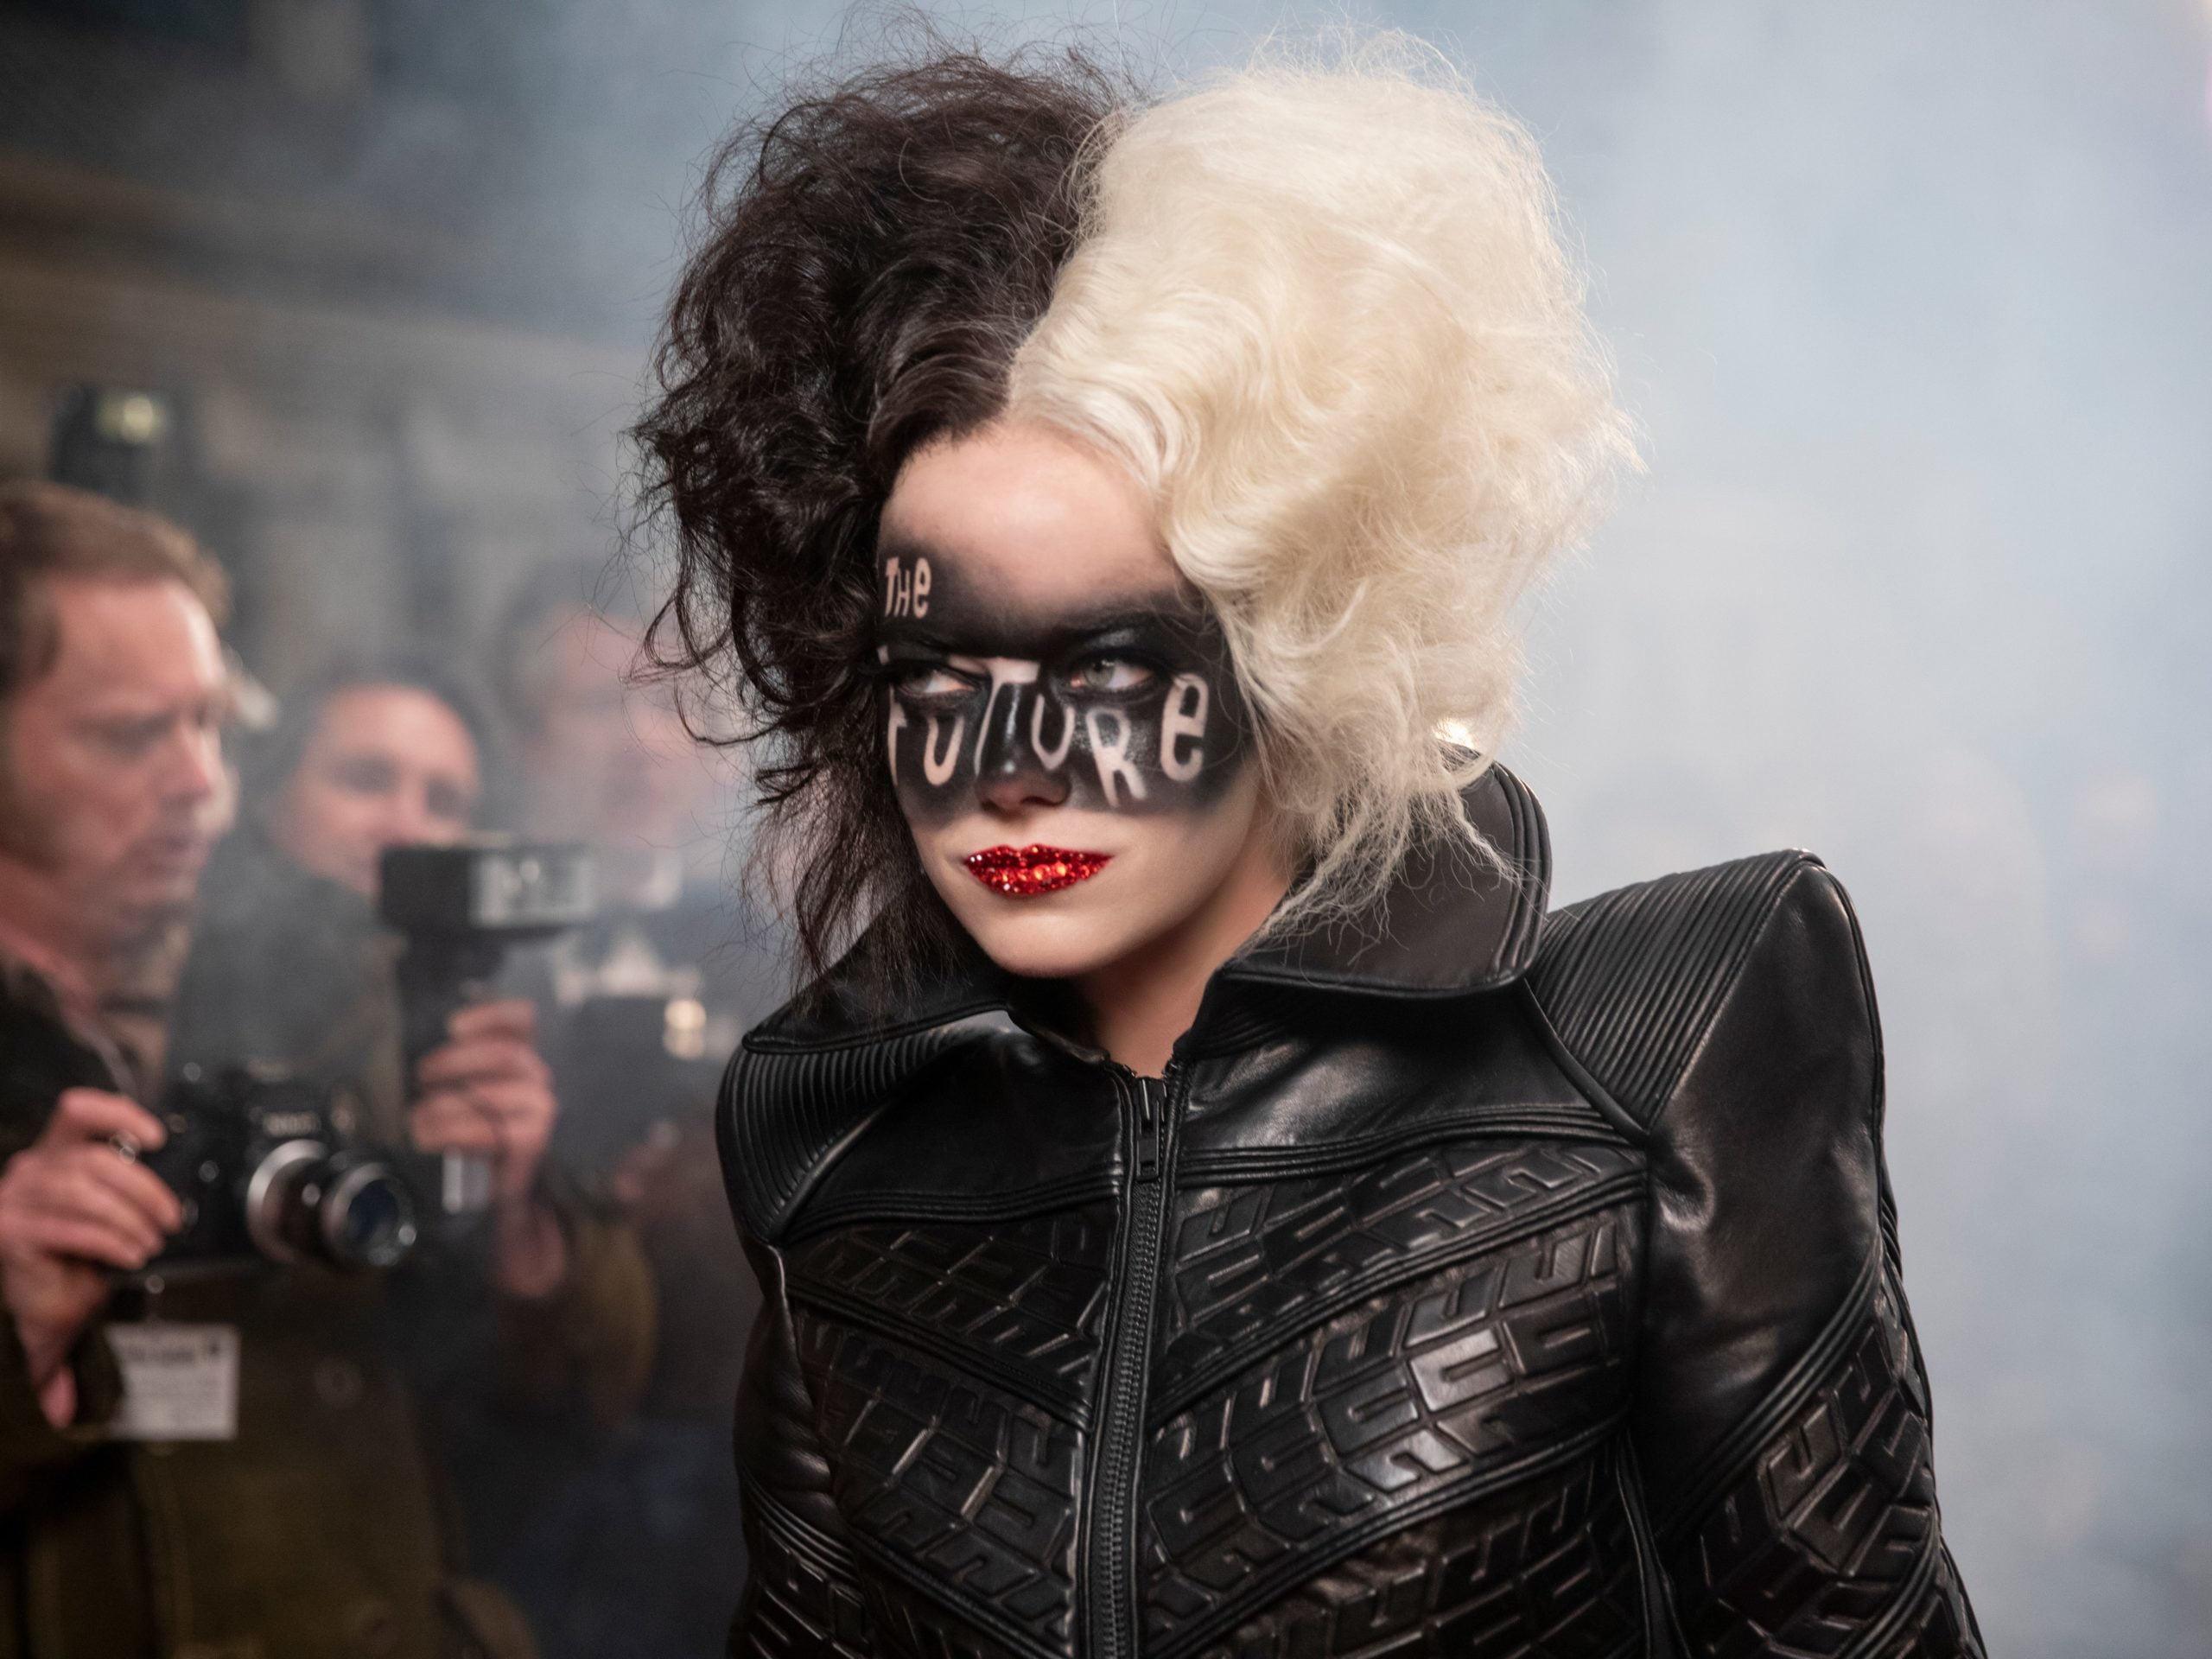 Cruella De Vil: vestuario, peinado y maquillaje de Cruella Demon